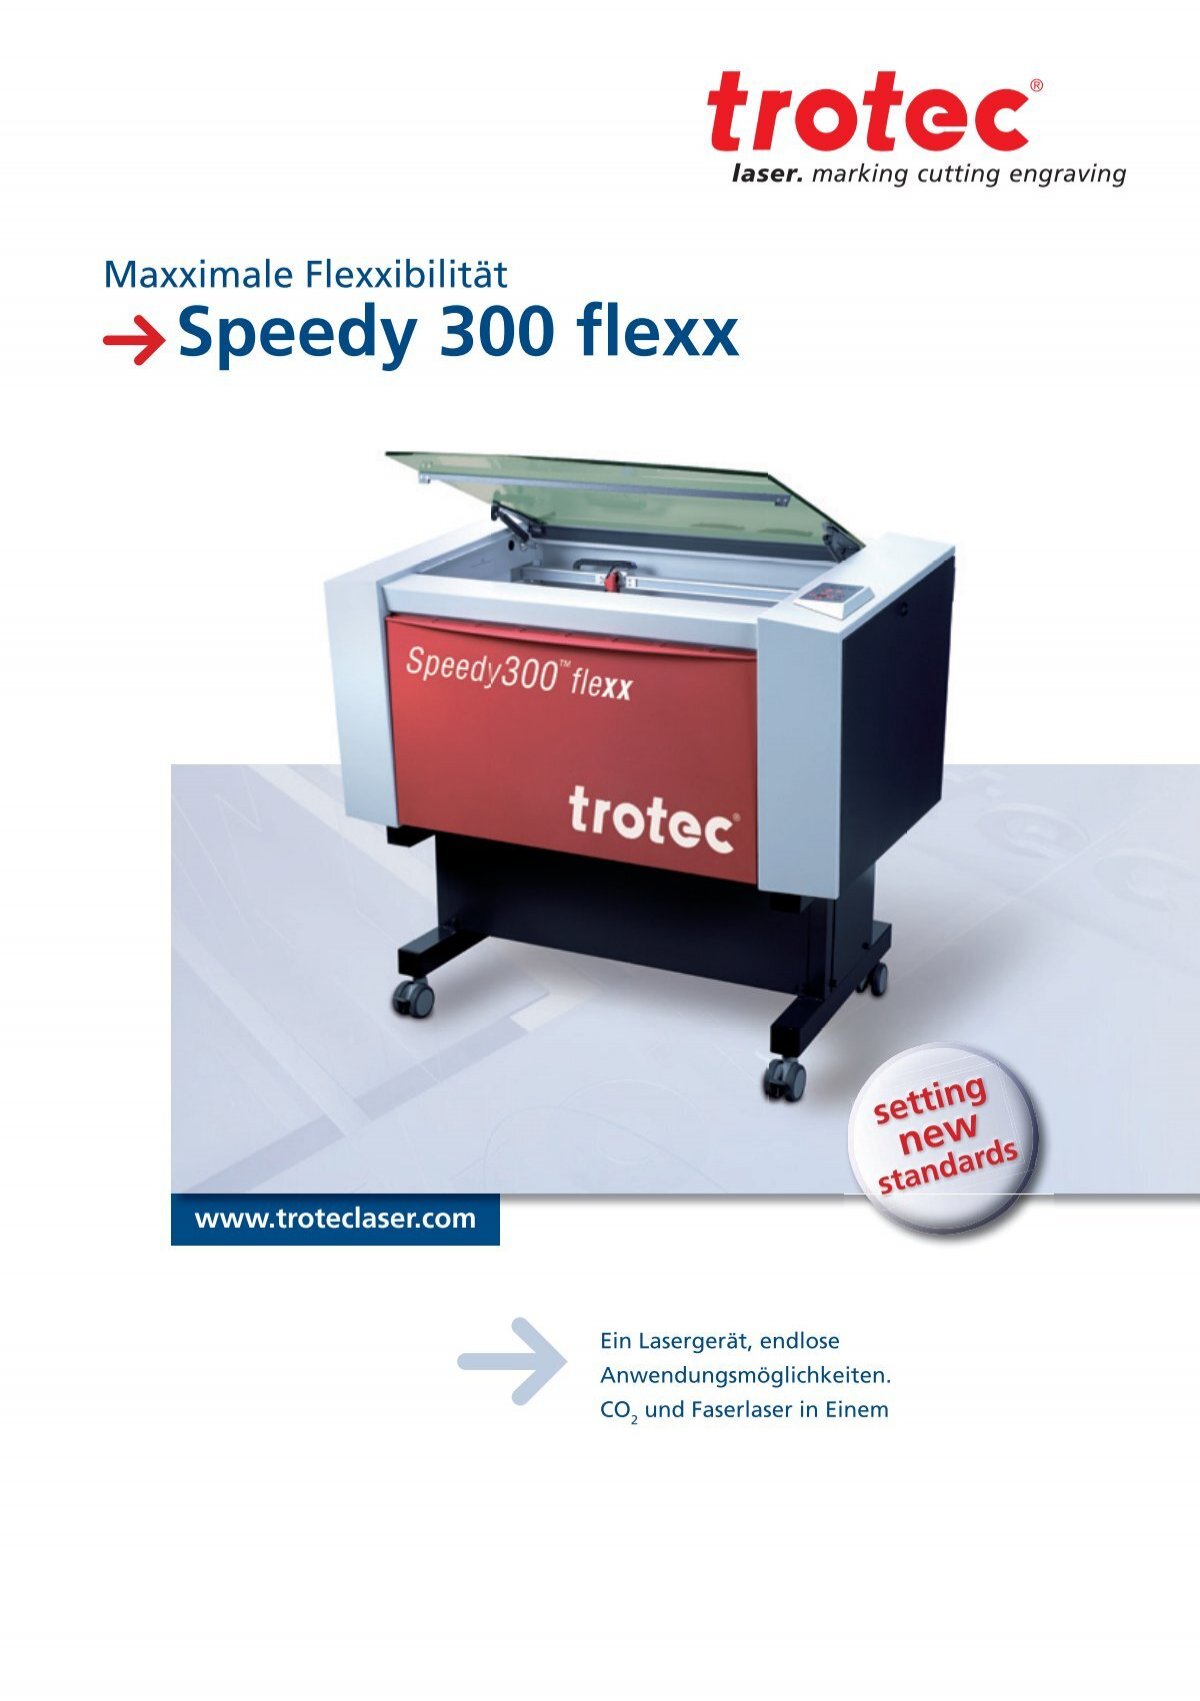 Die Technik des Speedy 300 flexx - Trotec Laser Inc